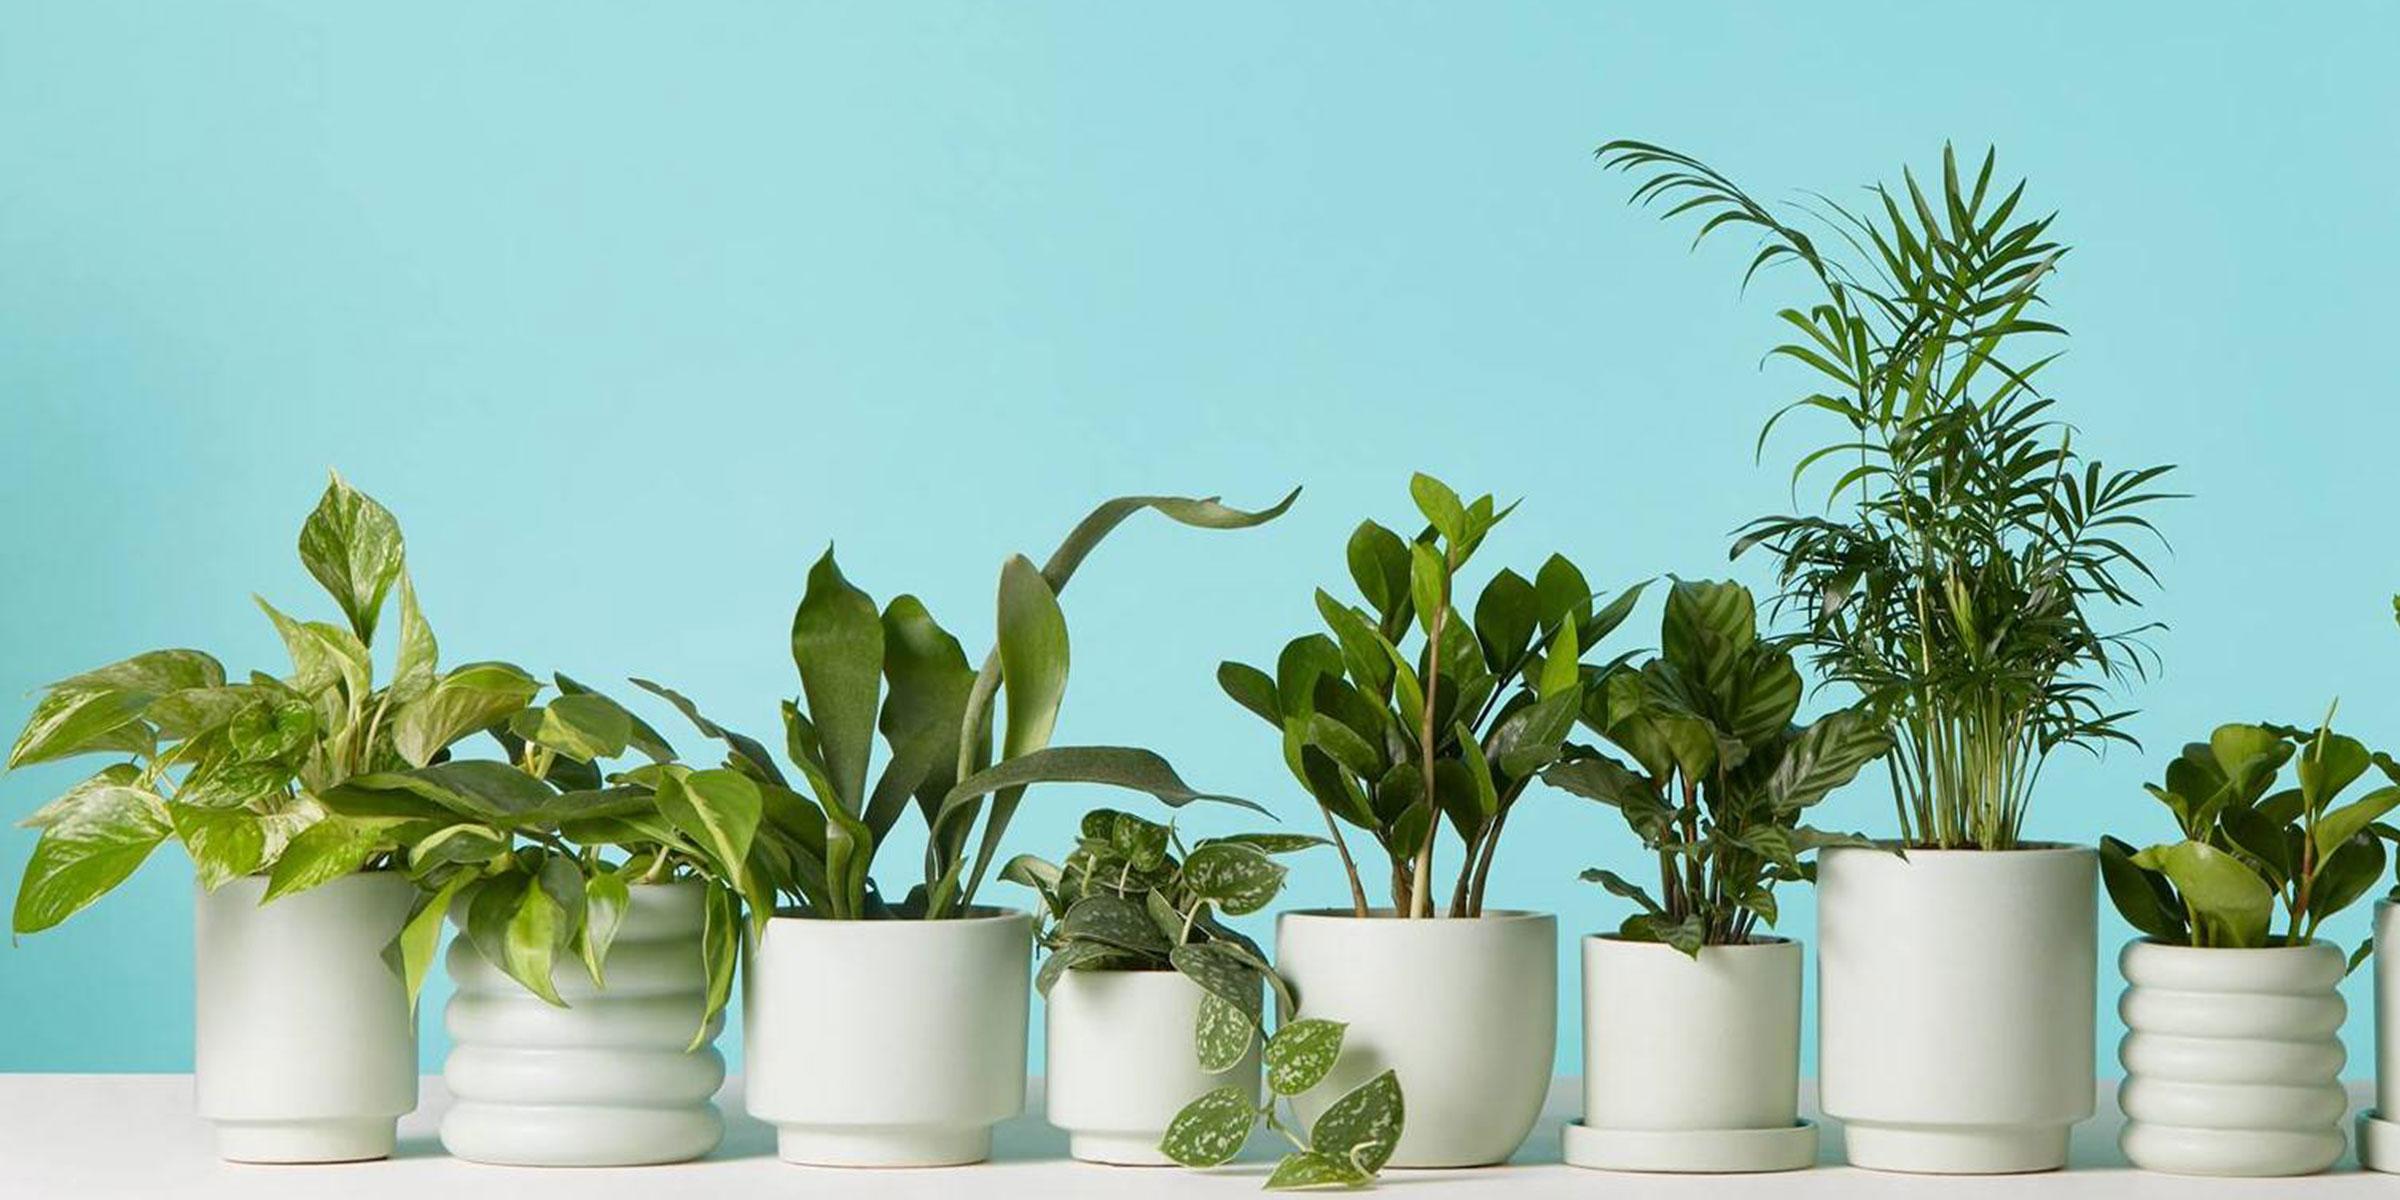 Go Green with indoor plants